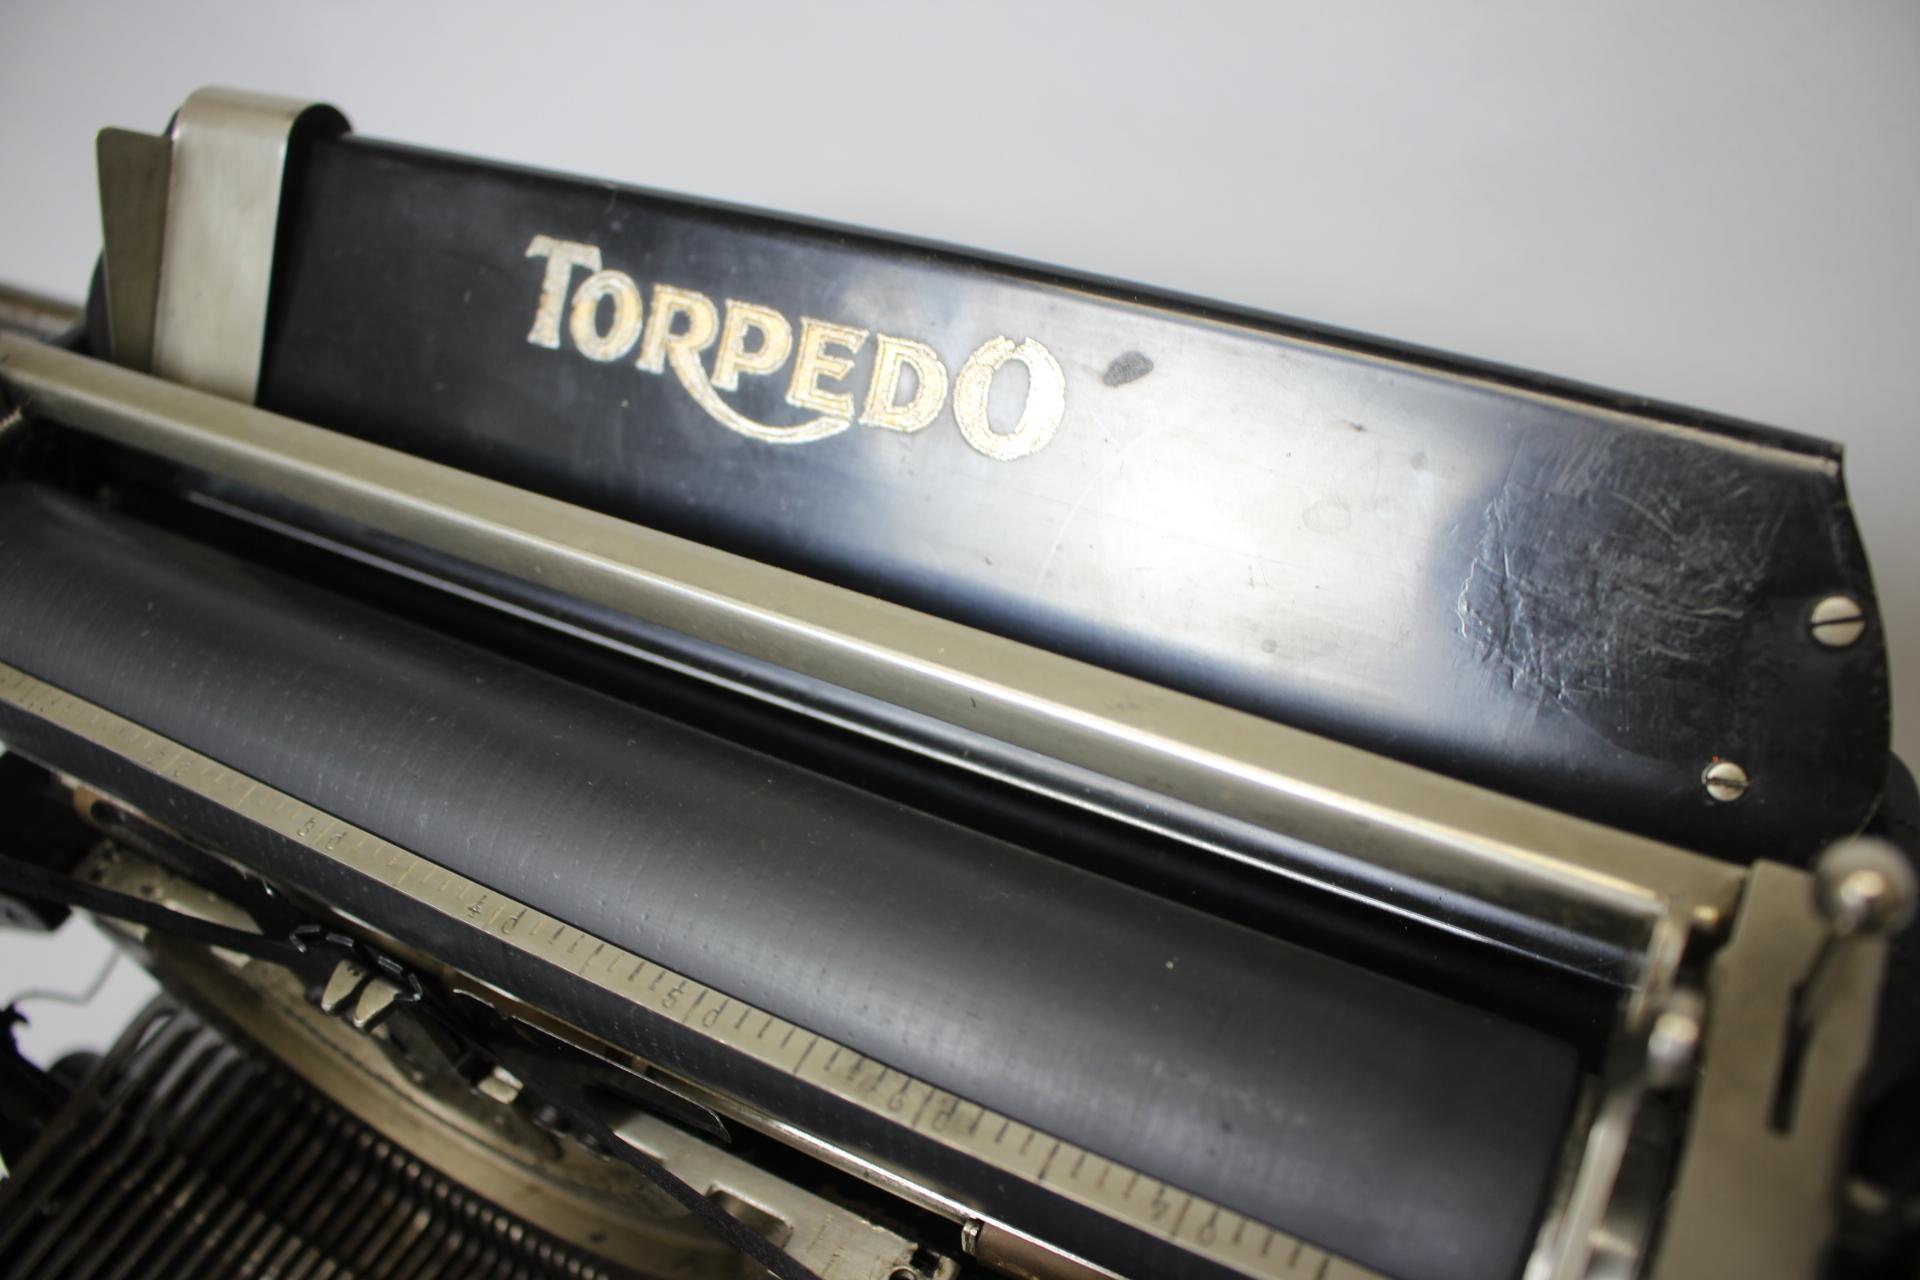 Metal Restored Typewriter/ Torpedo, Germany, 1905 For Sale